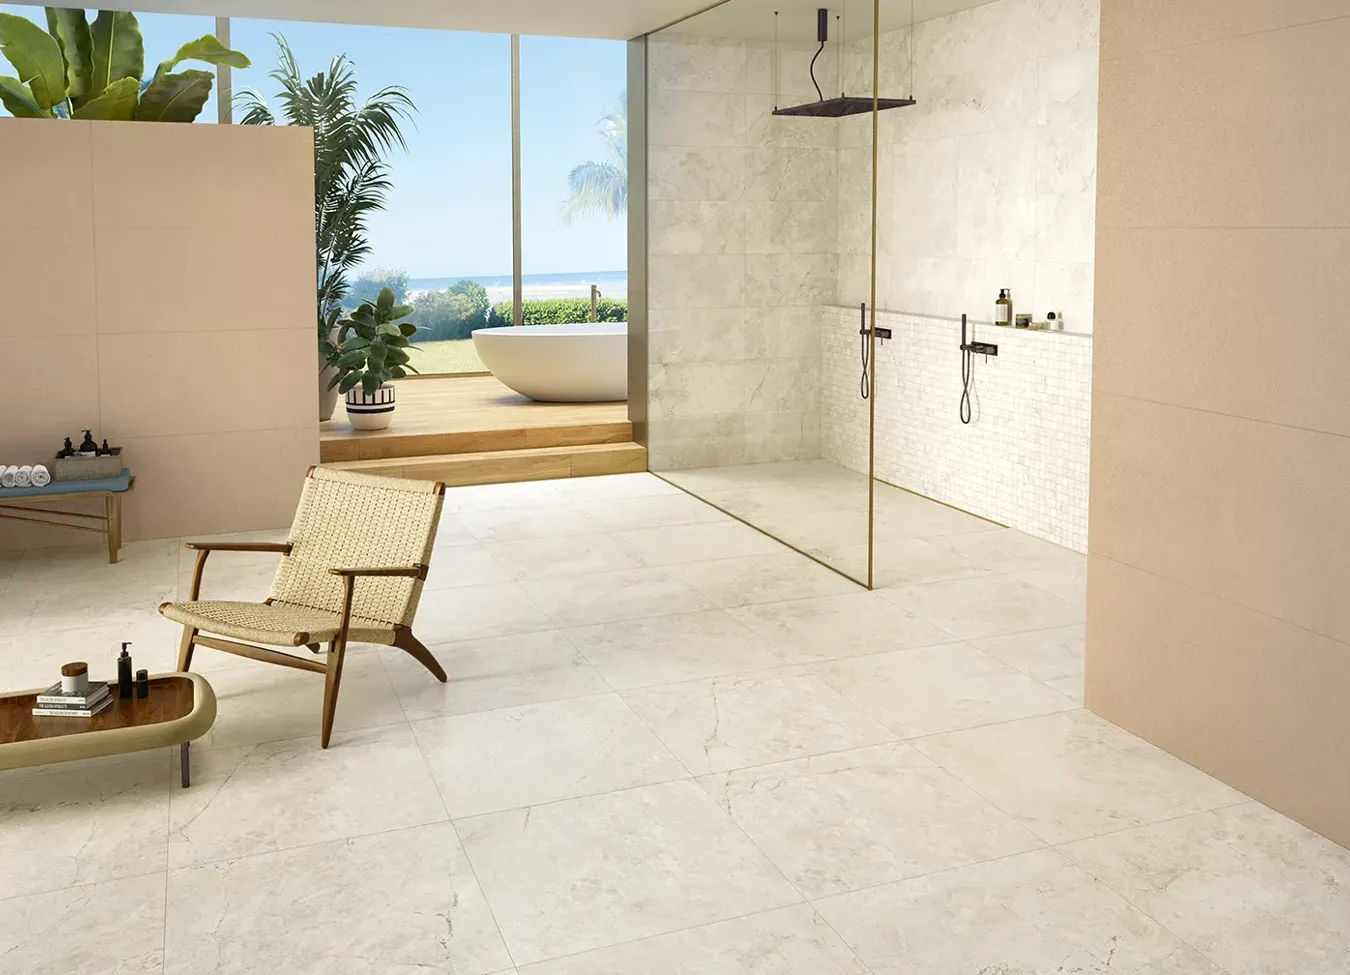 Открытая ванная комната с душевым поддоном под камень из коллекции Omnia, идеально сочетающая в себе внутреннее и внешнее пространства.